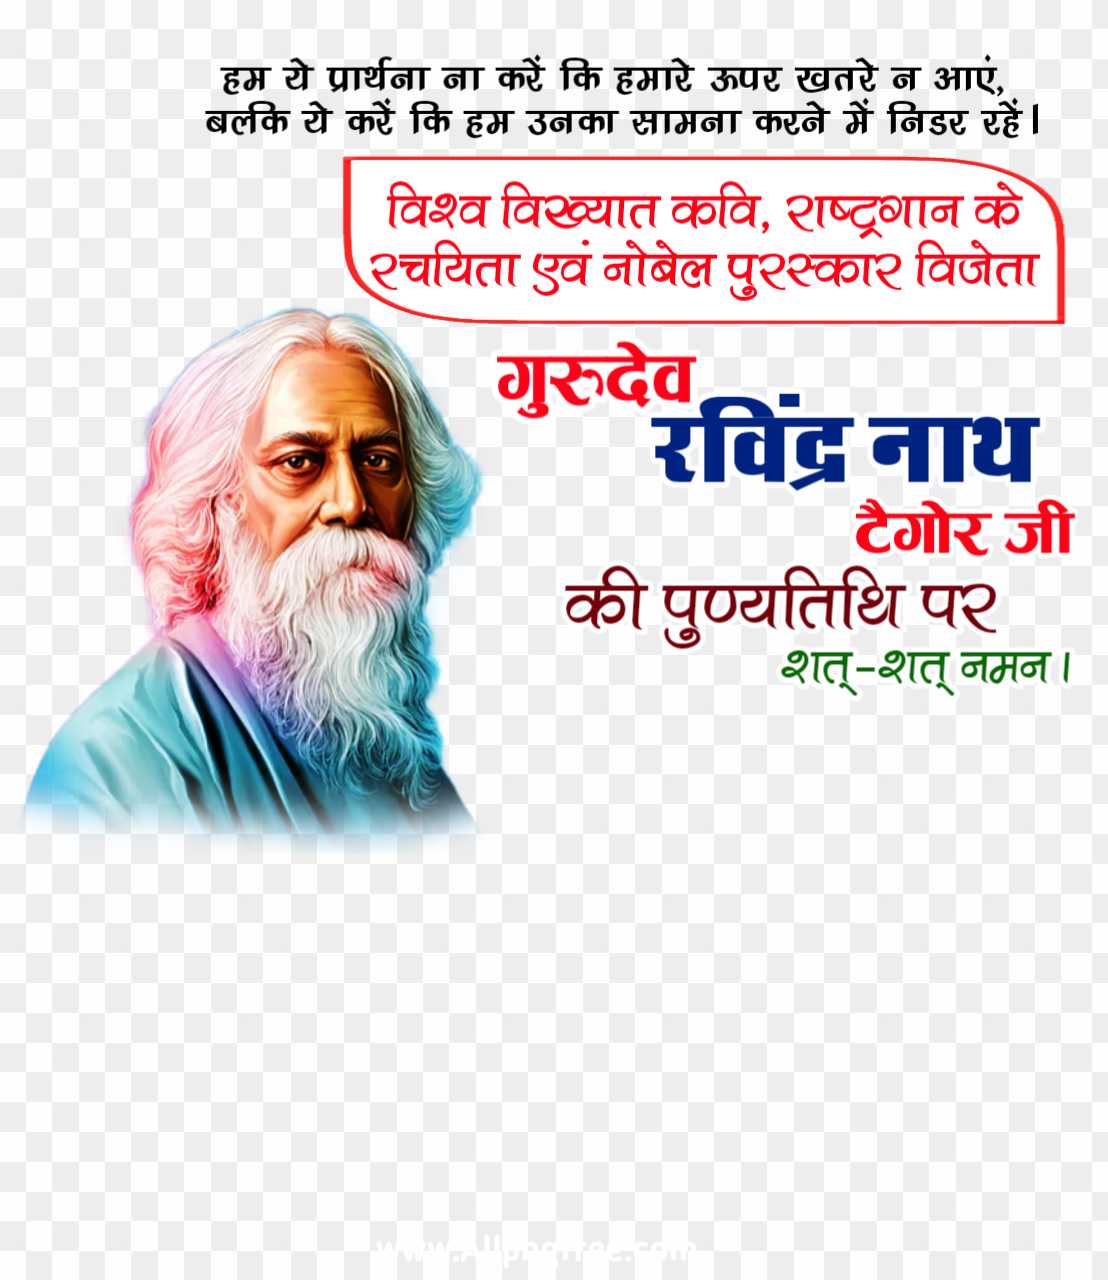 Ravinder nath Tagore punyatithi poster designing PNG images